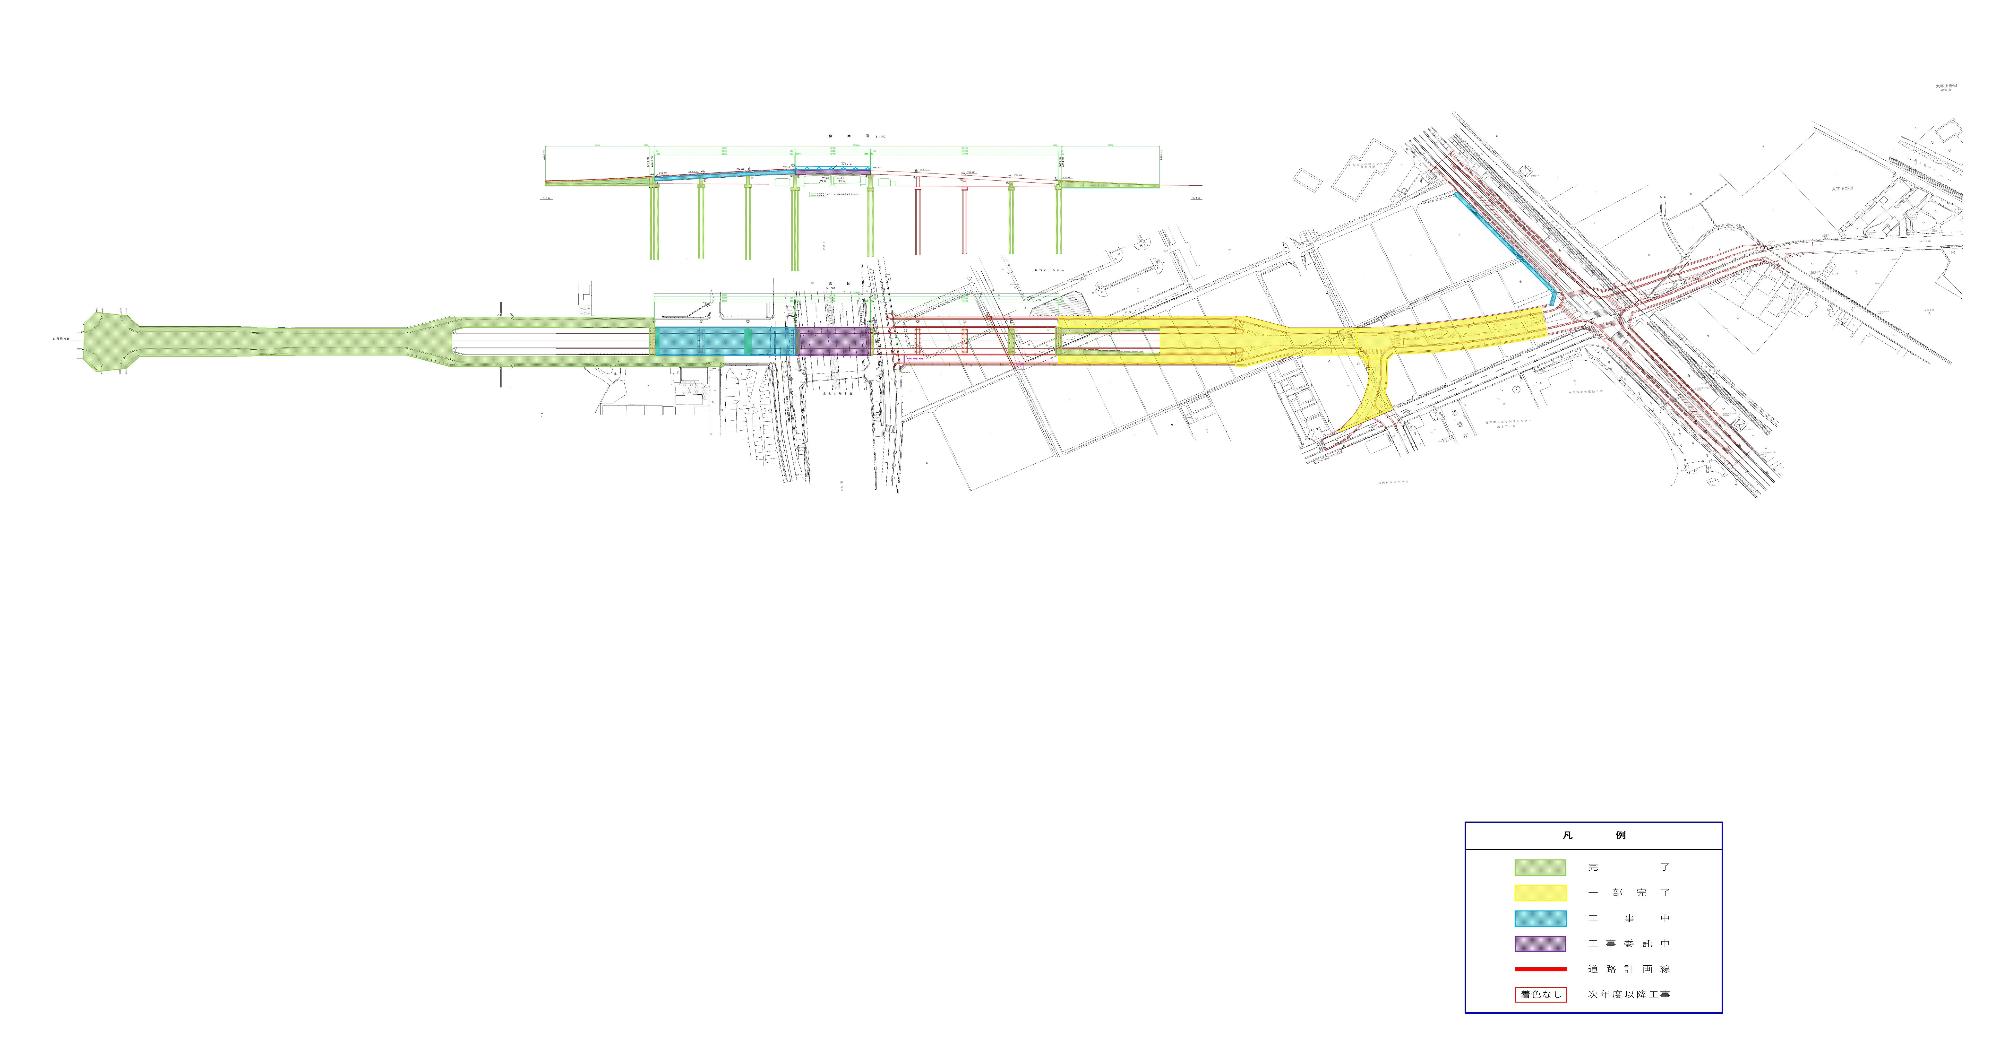 各ブロックの工事の進捗を状況ごとに色分けして示した鳥瞰図